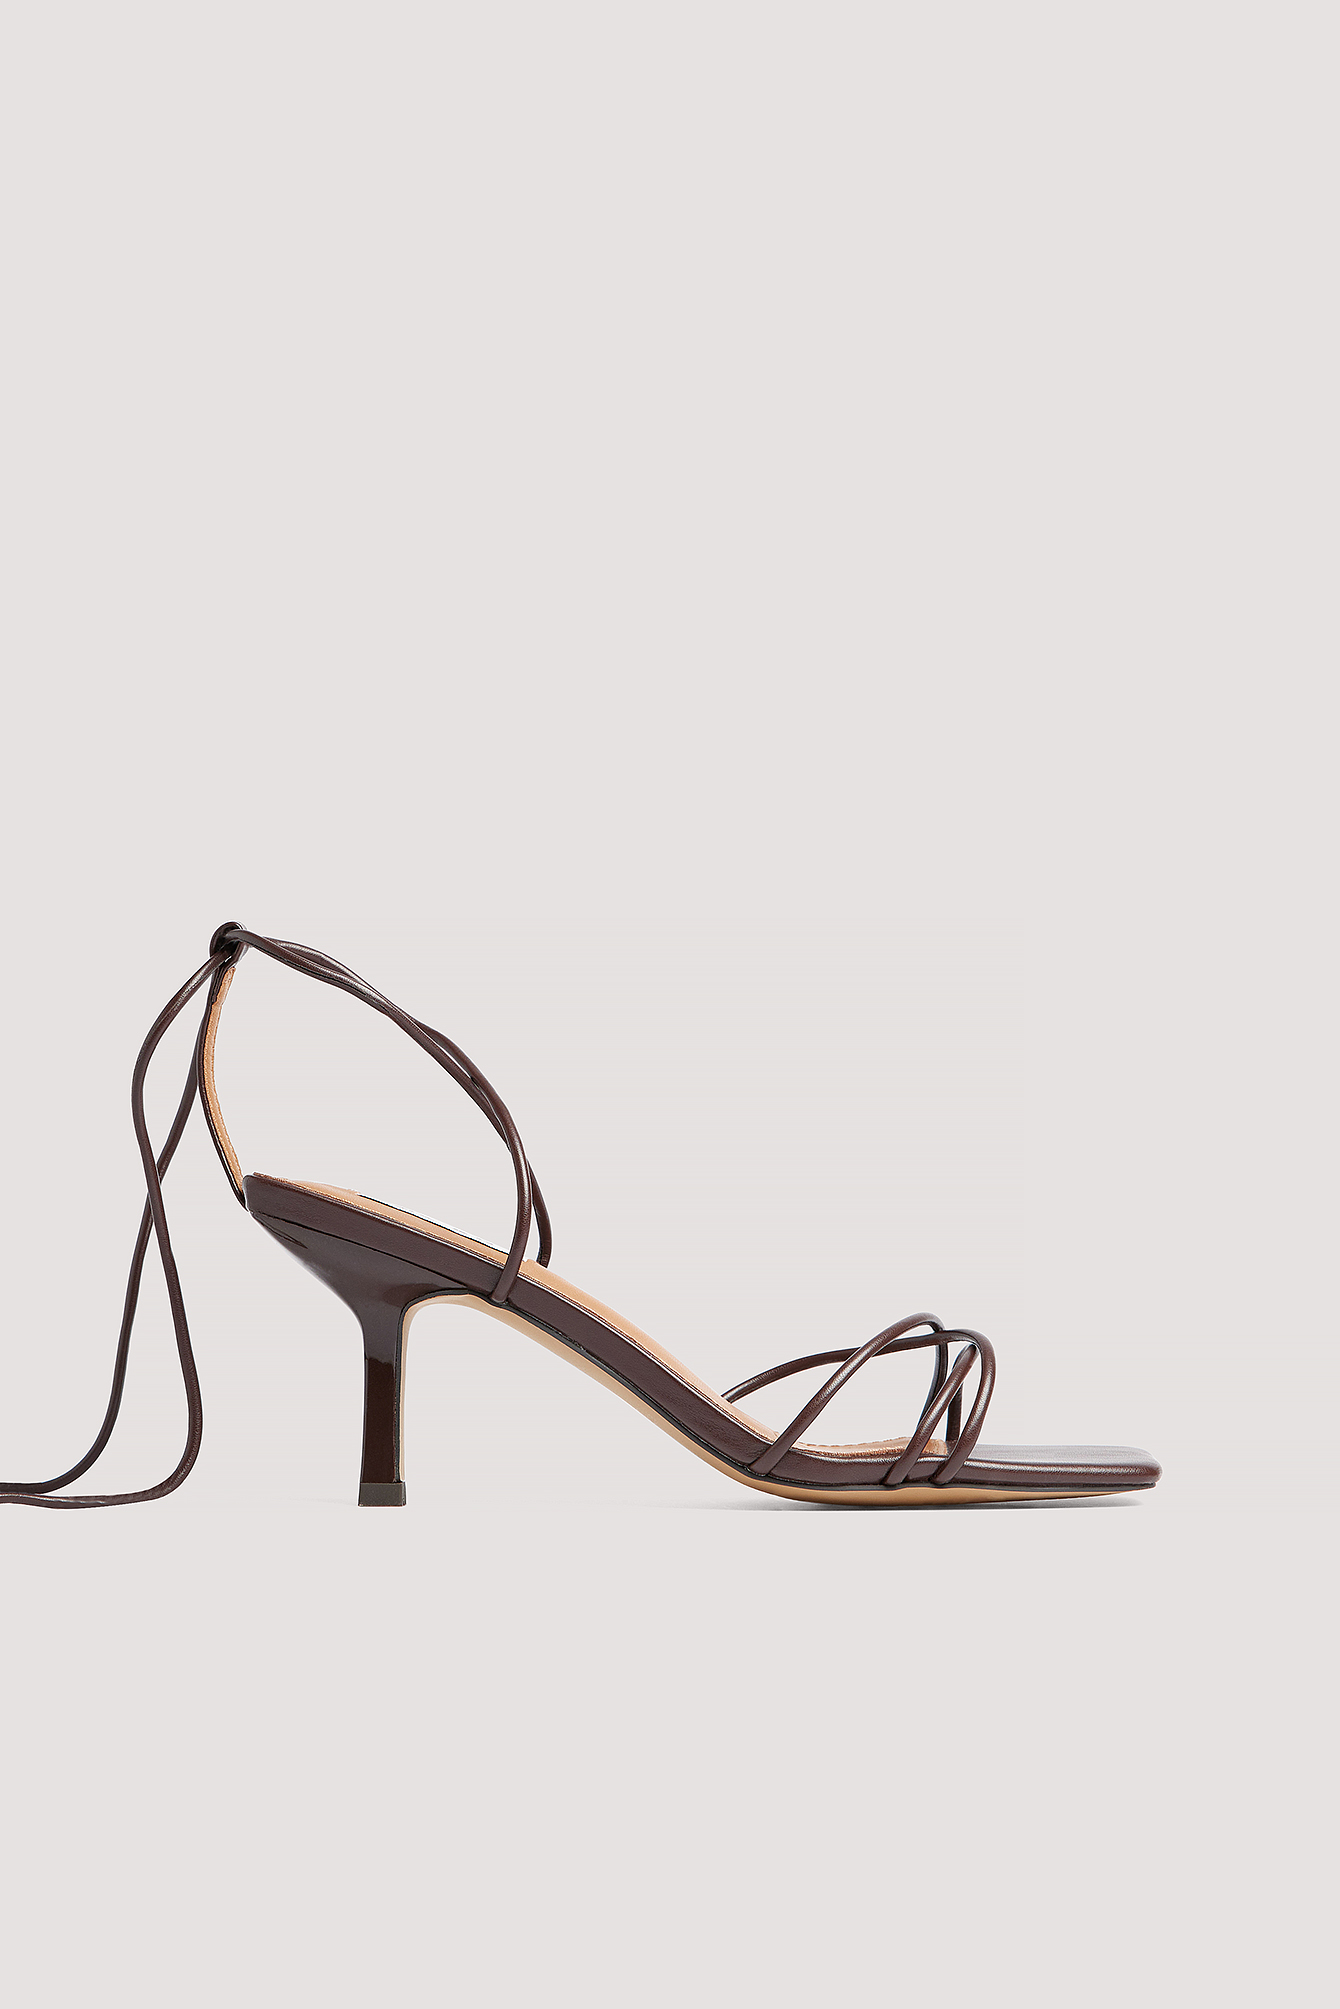 Discover 138+ ankle strap sandal heels super hot - esthdonghoadian